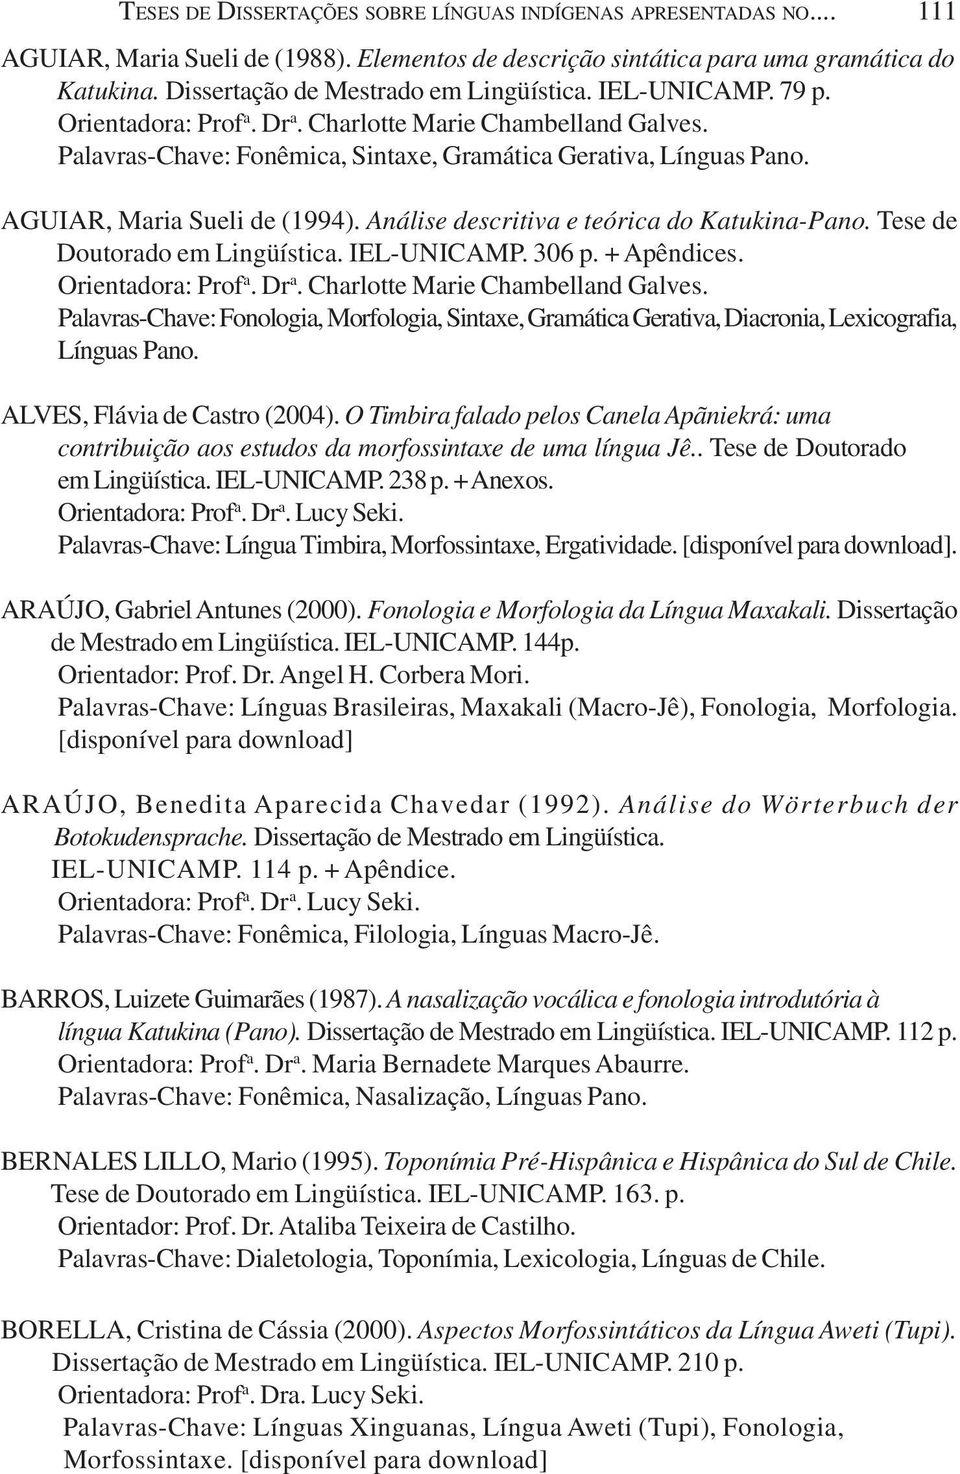 AGUIAR, Maria Sueli de (1994). Análise descritiva e teórica do Katukina-Pano. Tese de Doutorado em Lingüística. IEL-UNICAMP. 306 p. + Apêndices. Orientadora: Prof a. Dr a.